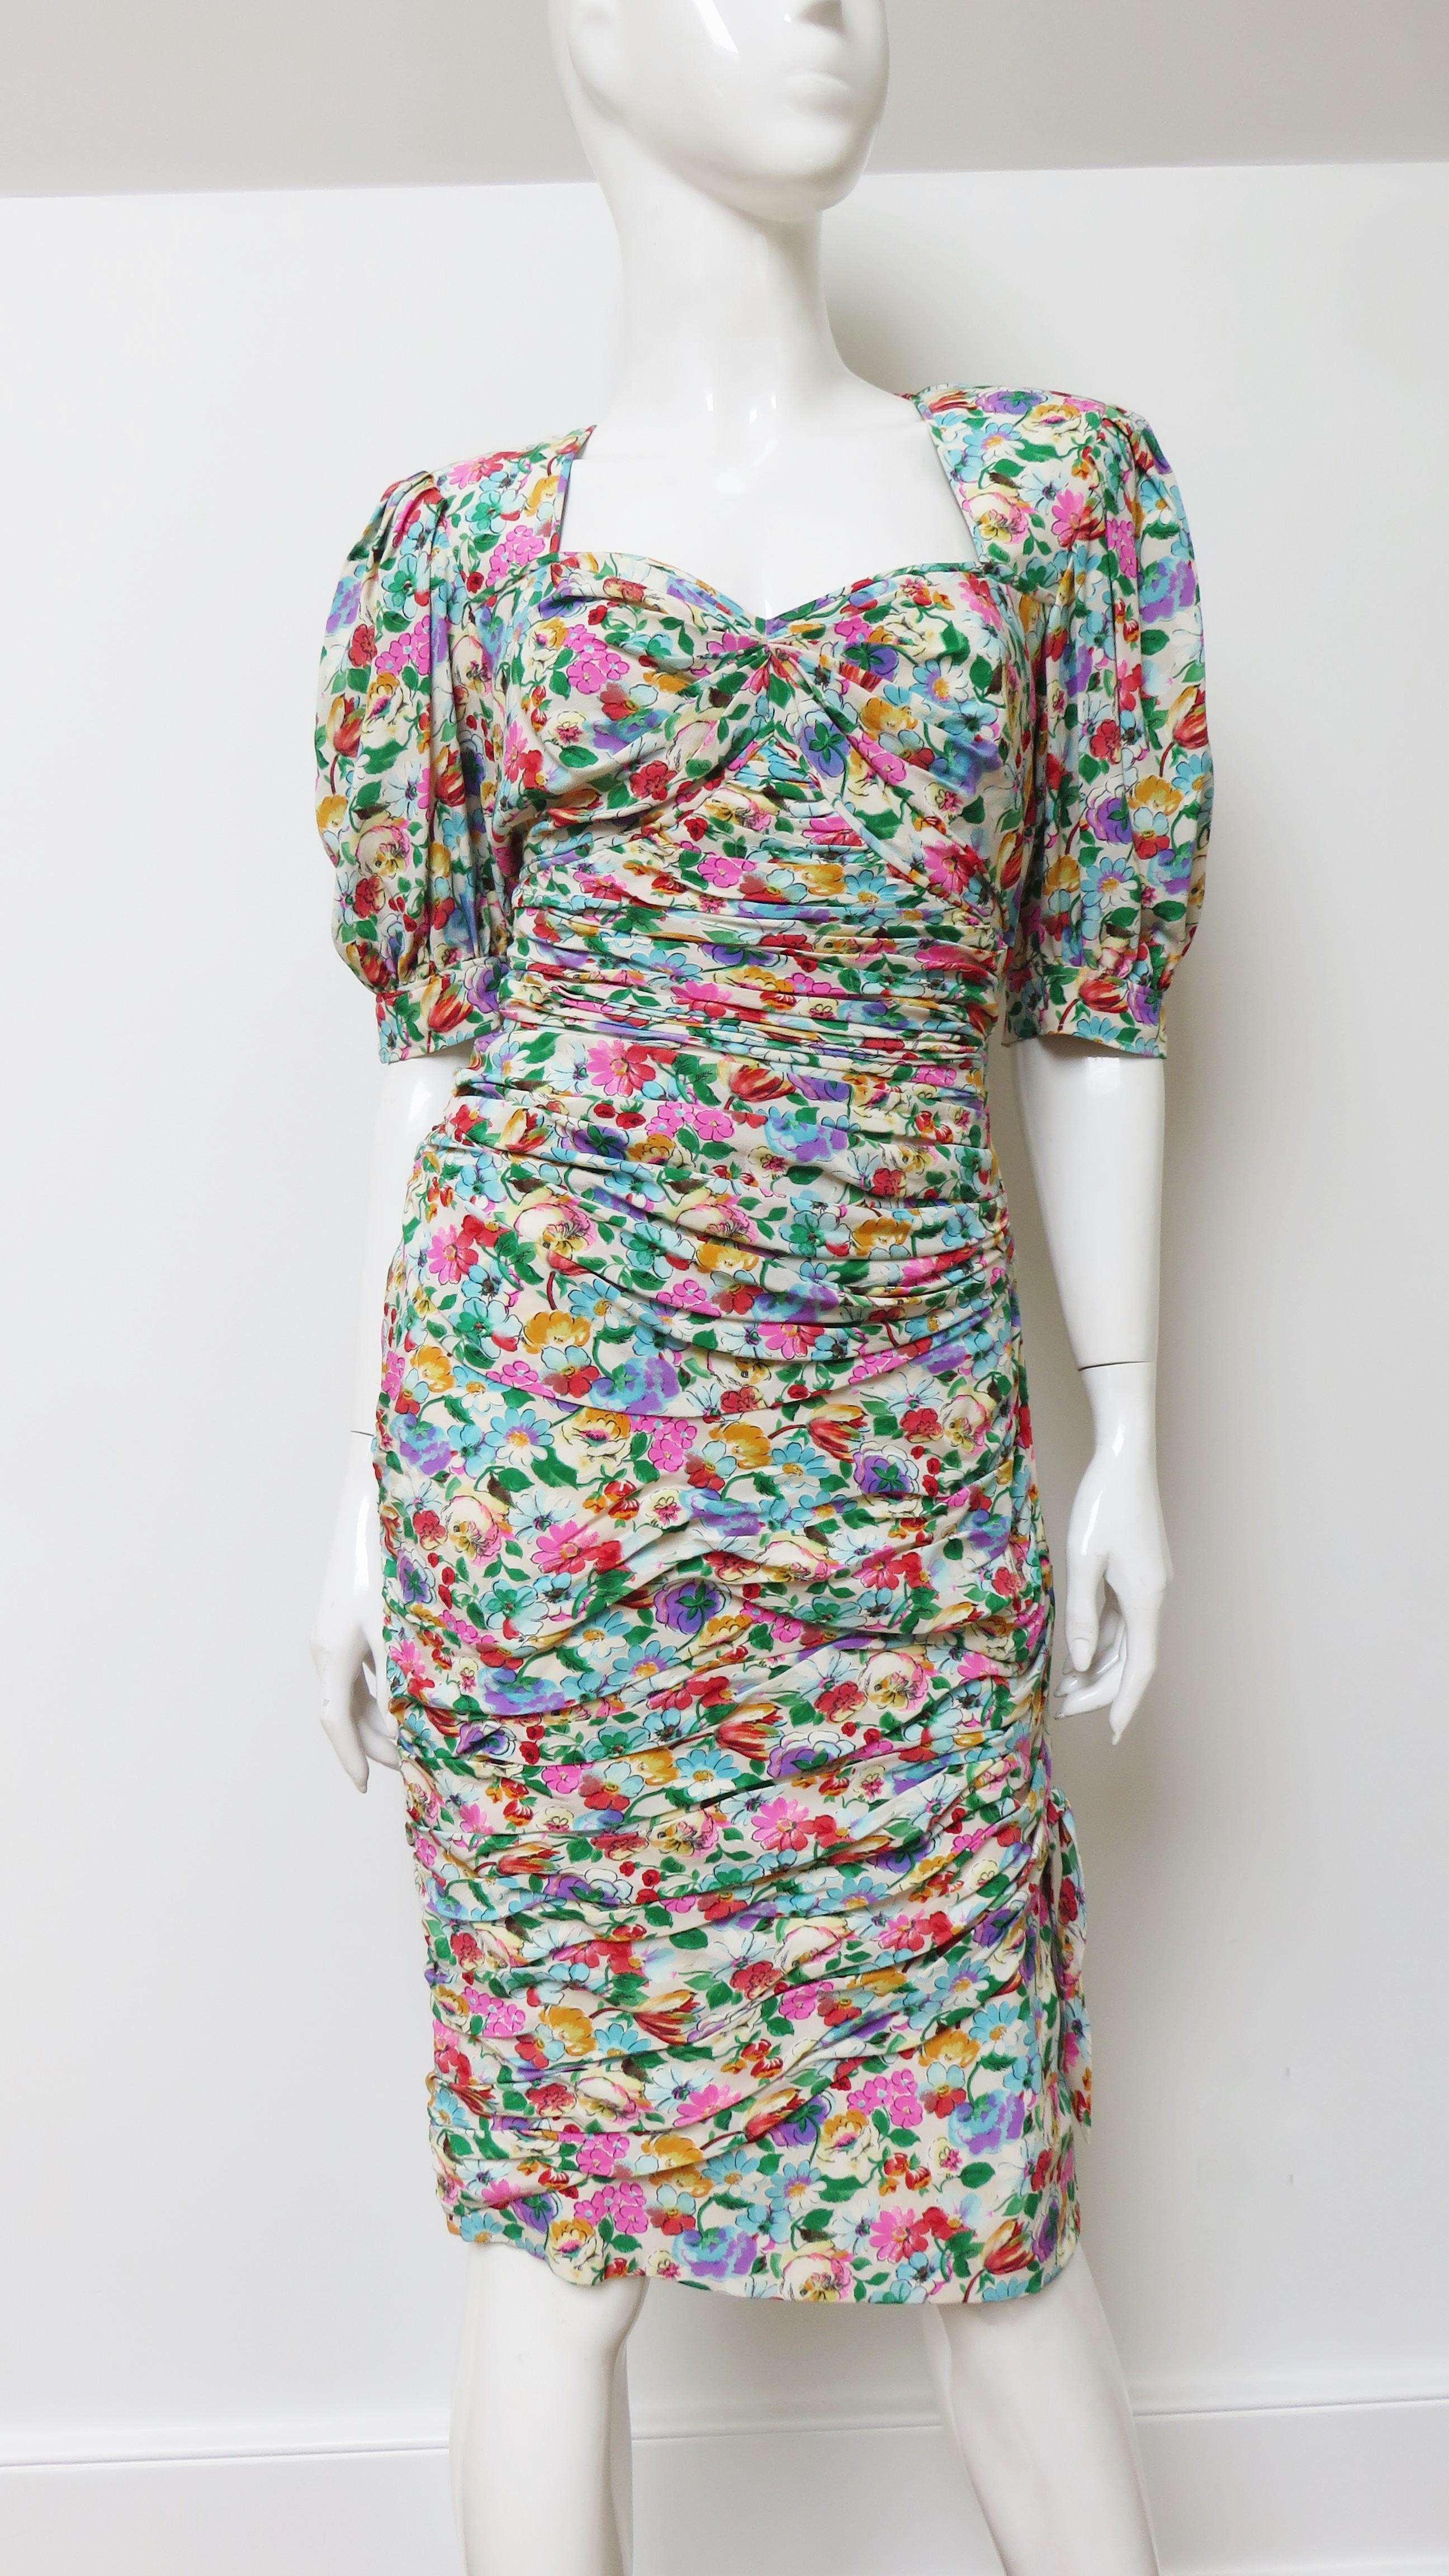 Une très jolie robe en soie à motifs floraux d'Emanuel Ungaro dans des tons roses, bleus, verts et dorés sur un fond blanc cassé. Elle présente une encolure en cœur, des manches bouffantes au coude avec attaches et est froncée horizontalement devant